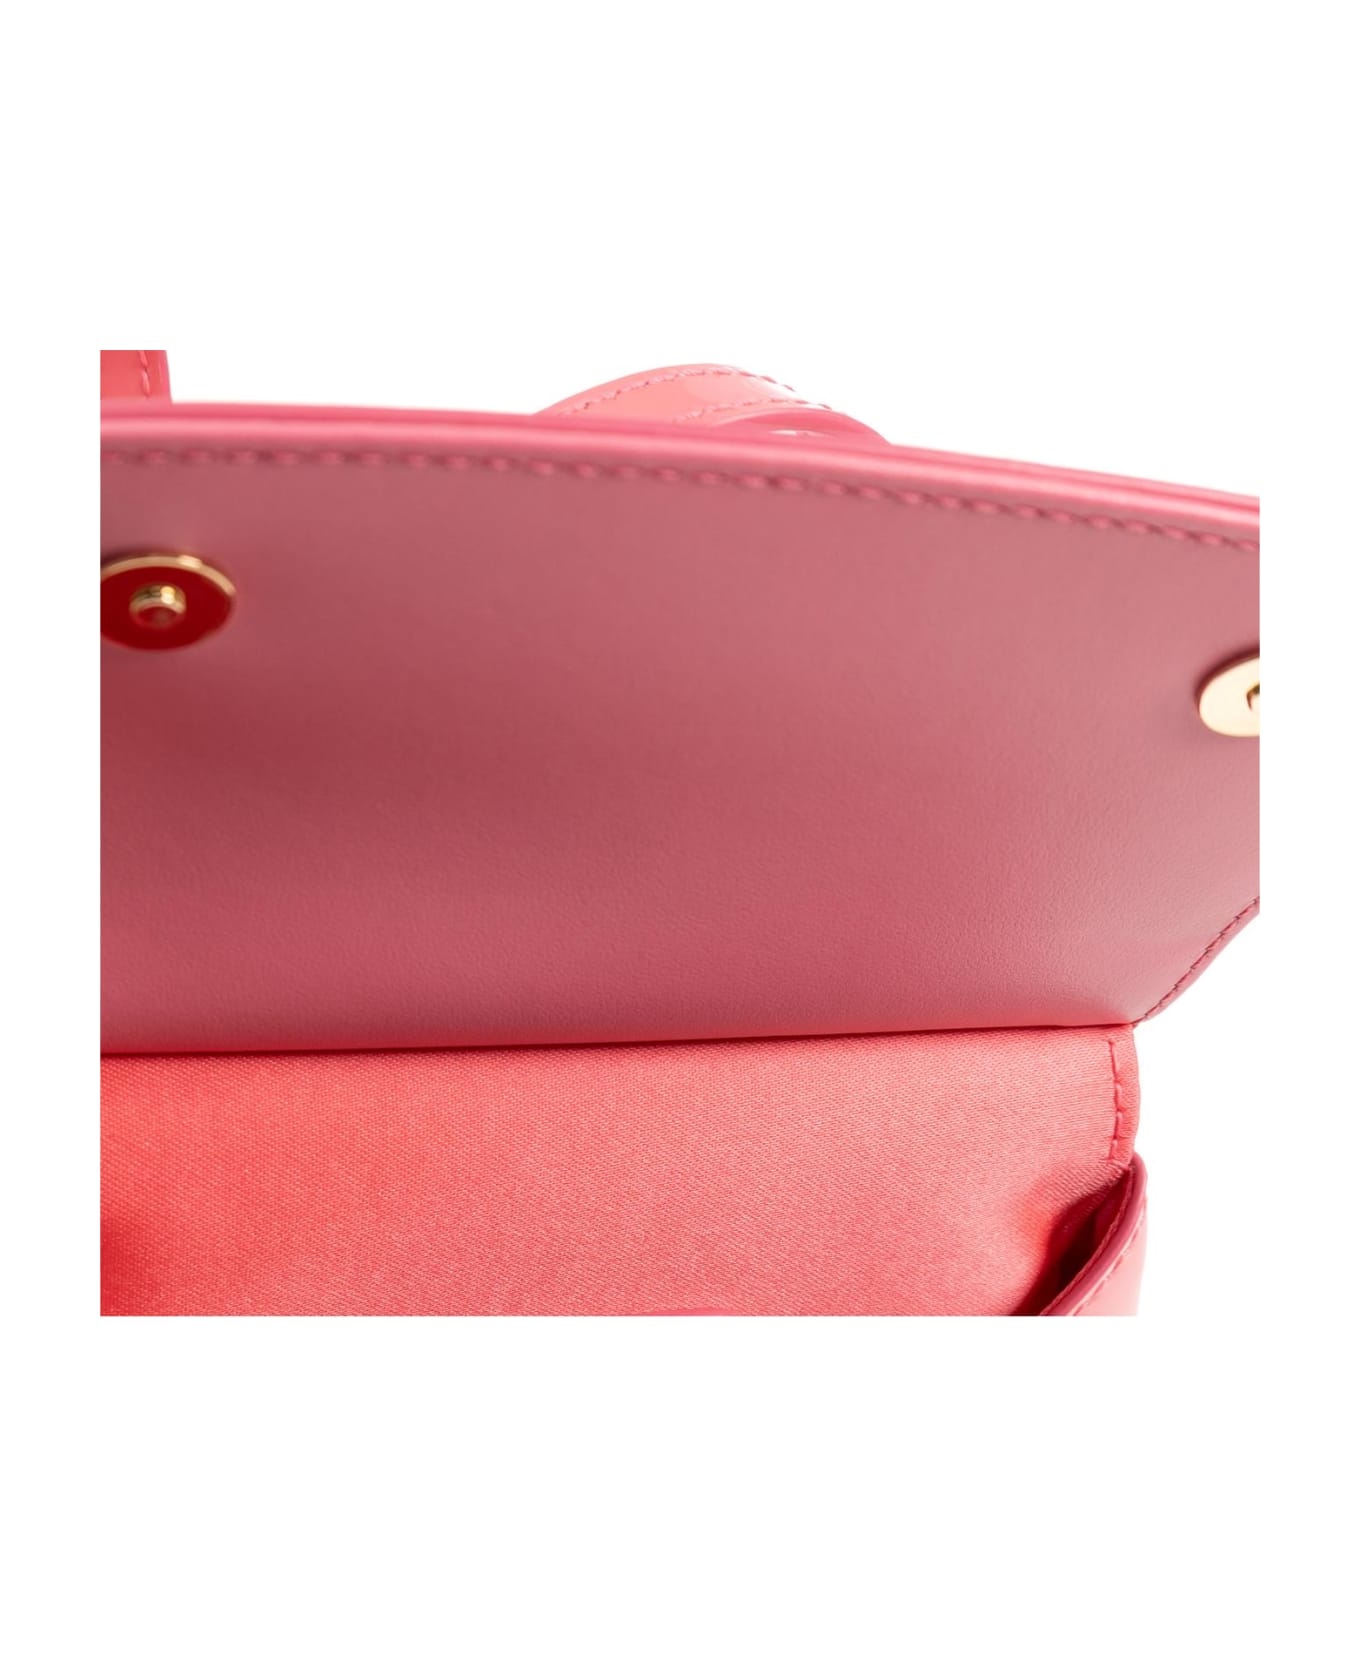 Dolce & Gabbana Kids 'sicily Mini' Shoulder Bag - Fuchsia